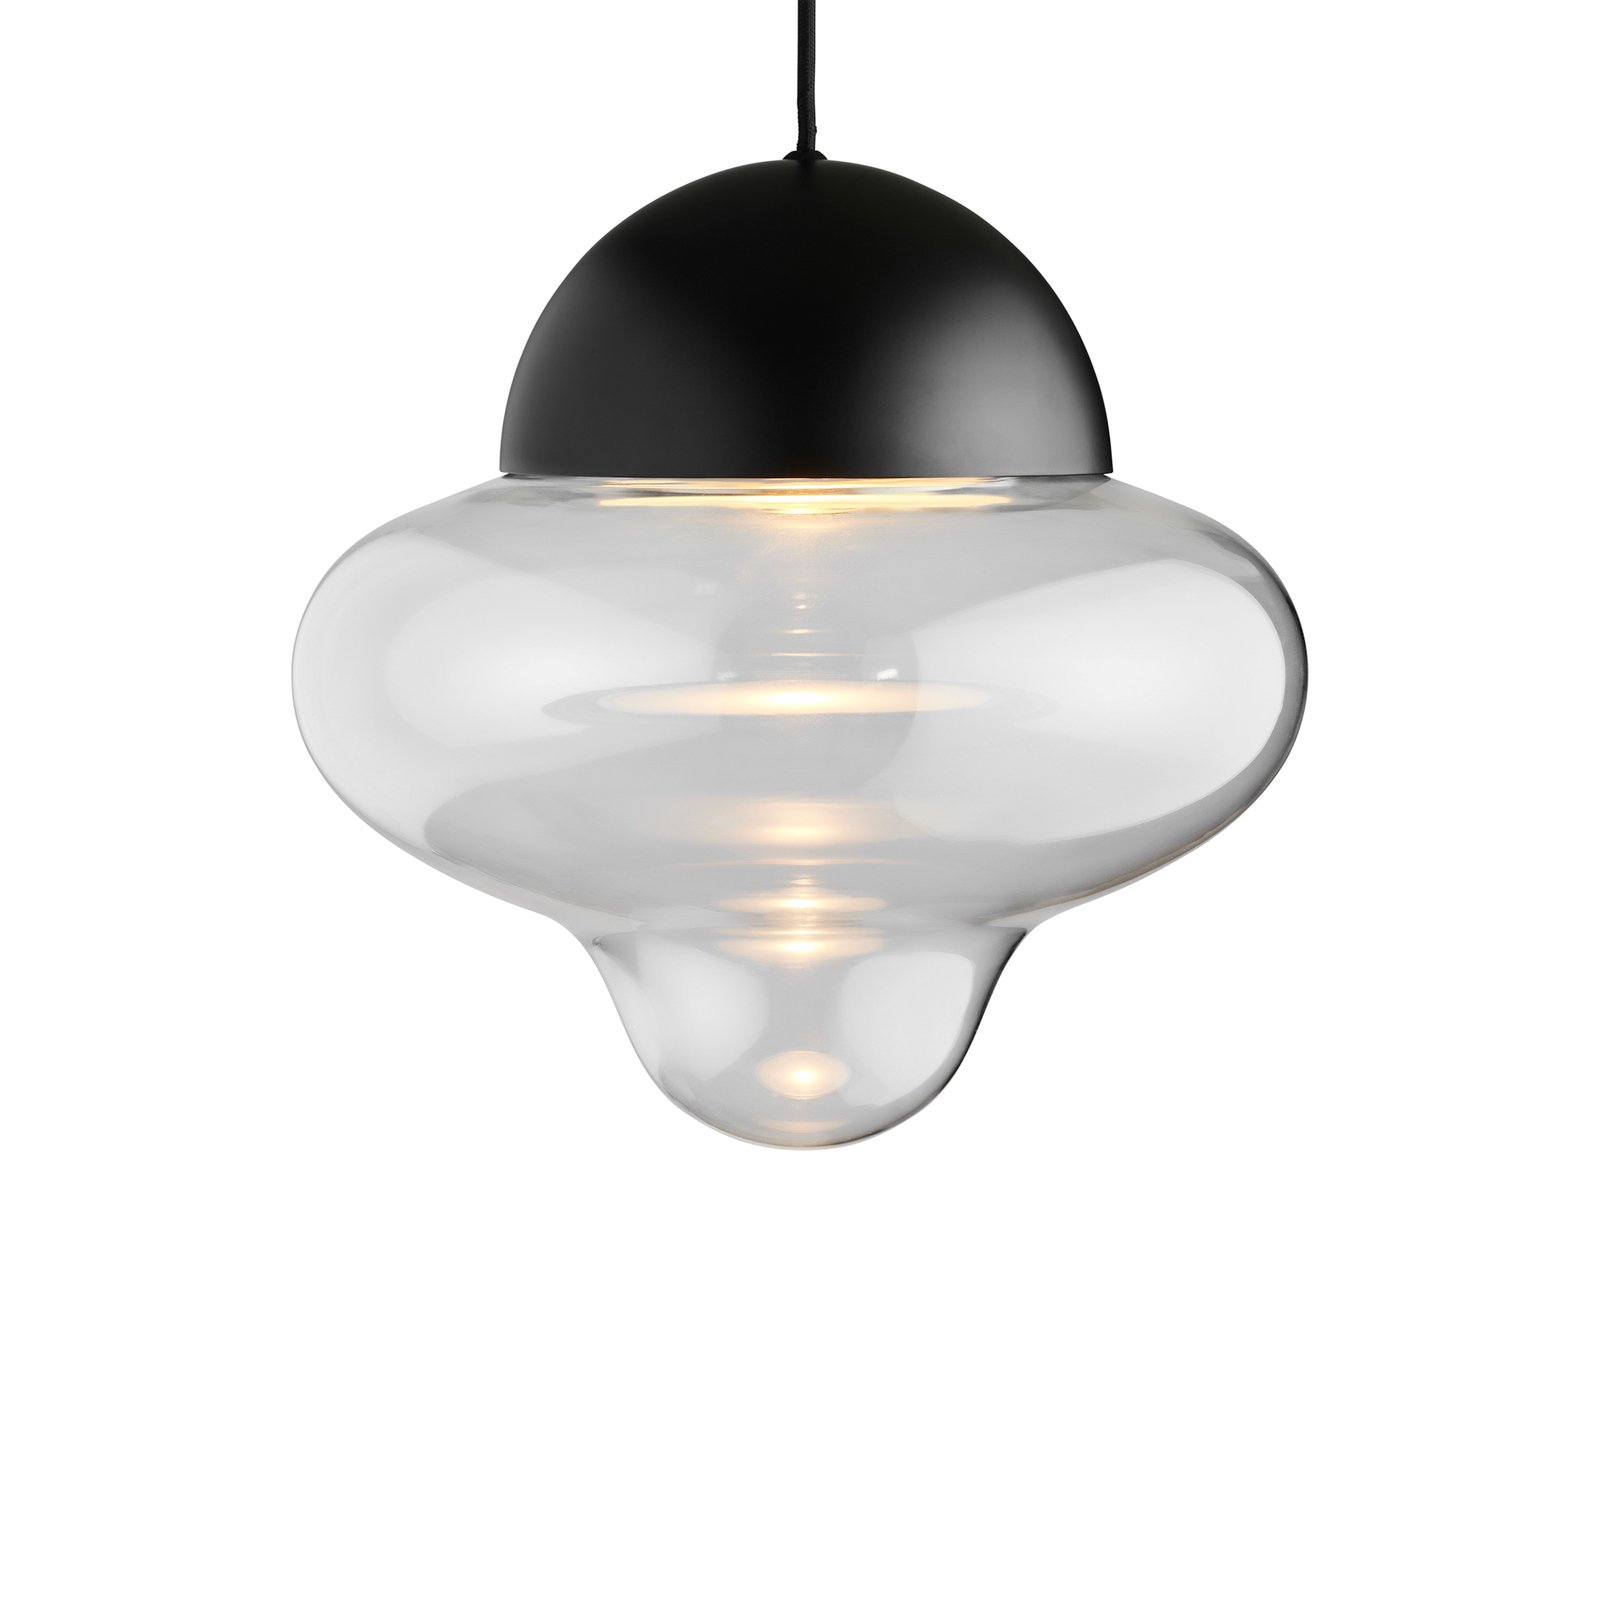 Hanglamp Nutty XL, helder / zwart, Ø 30 cm, glas